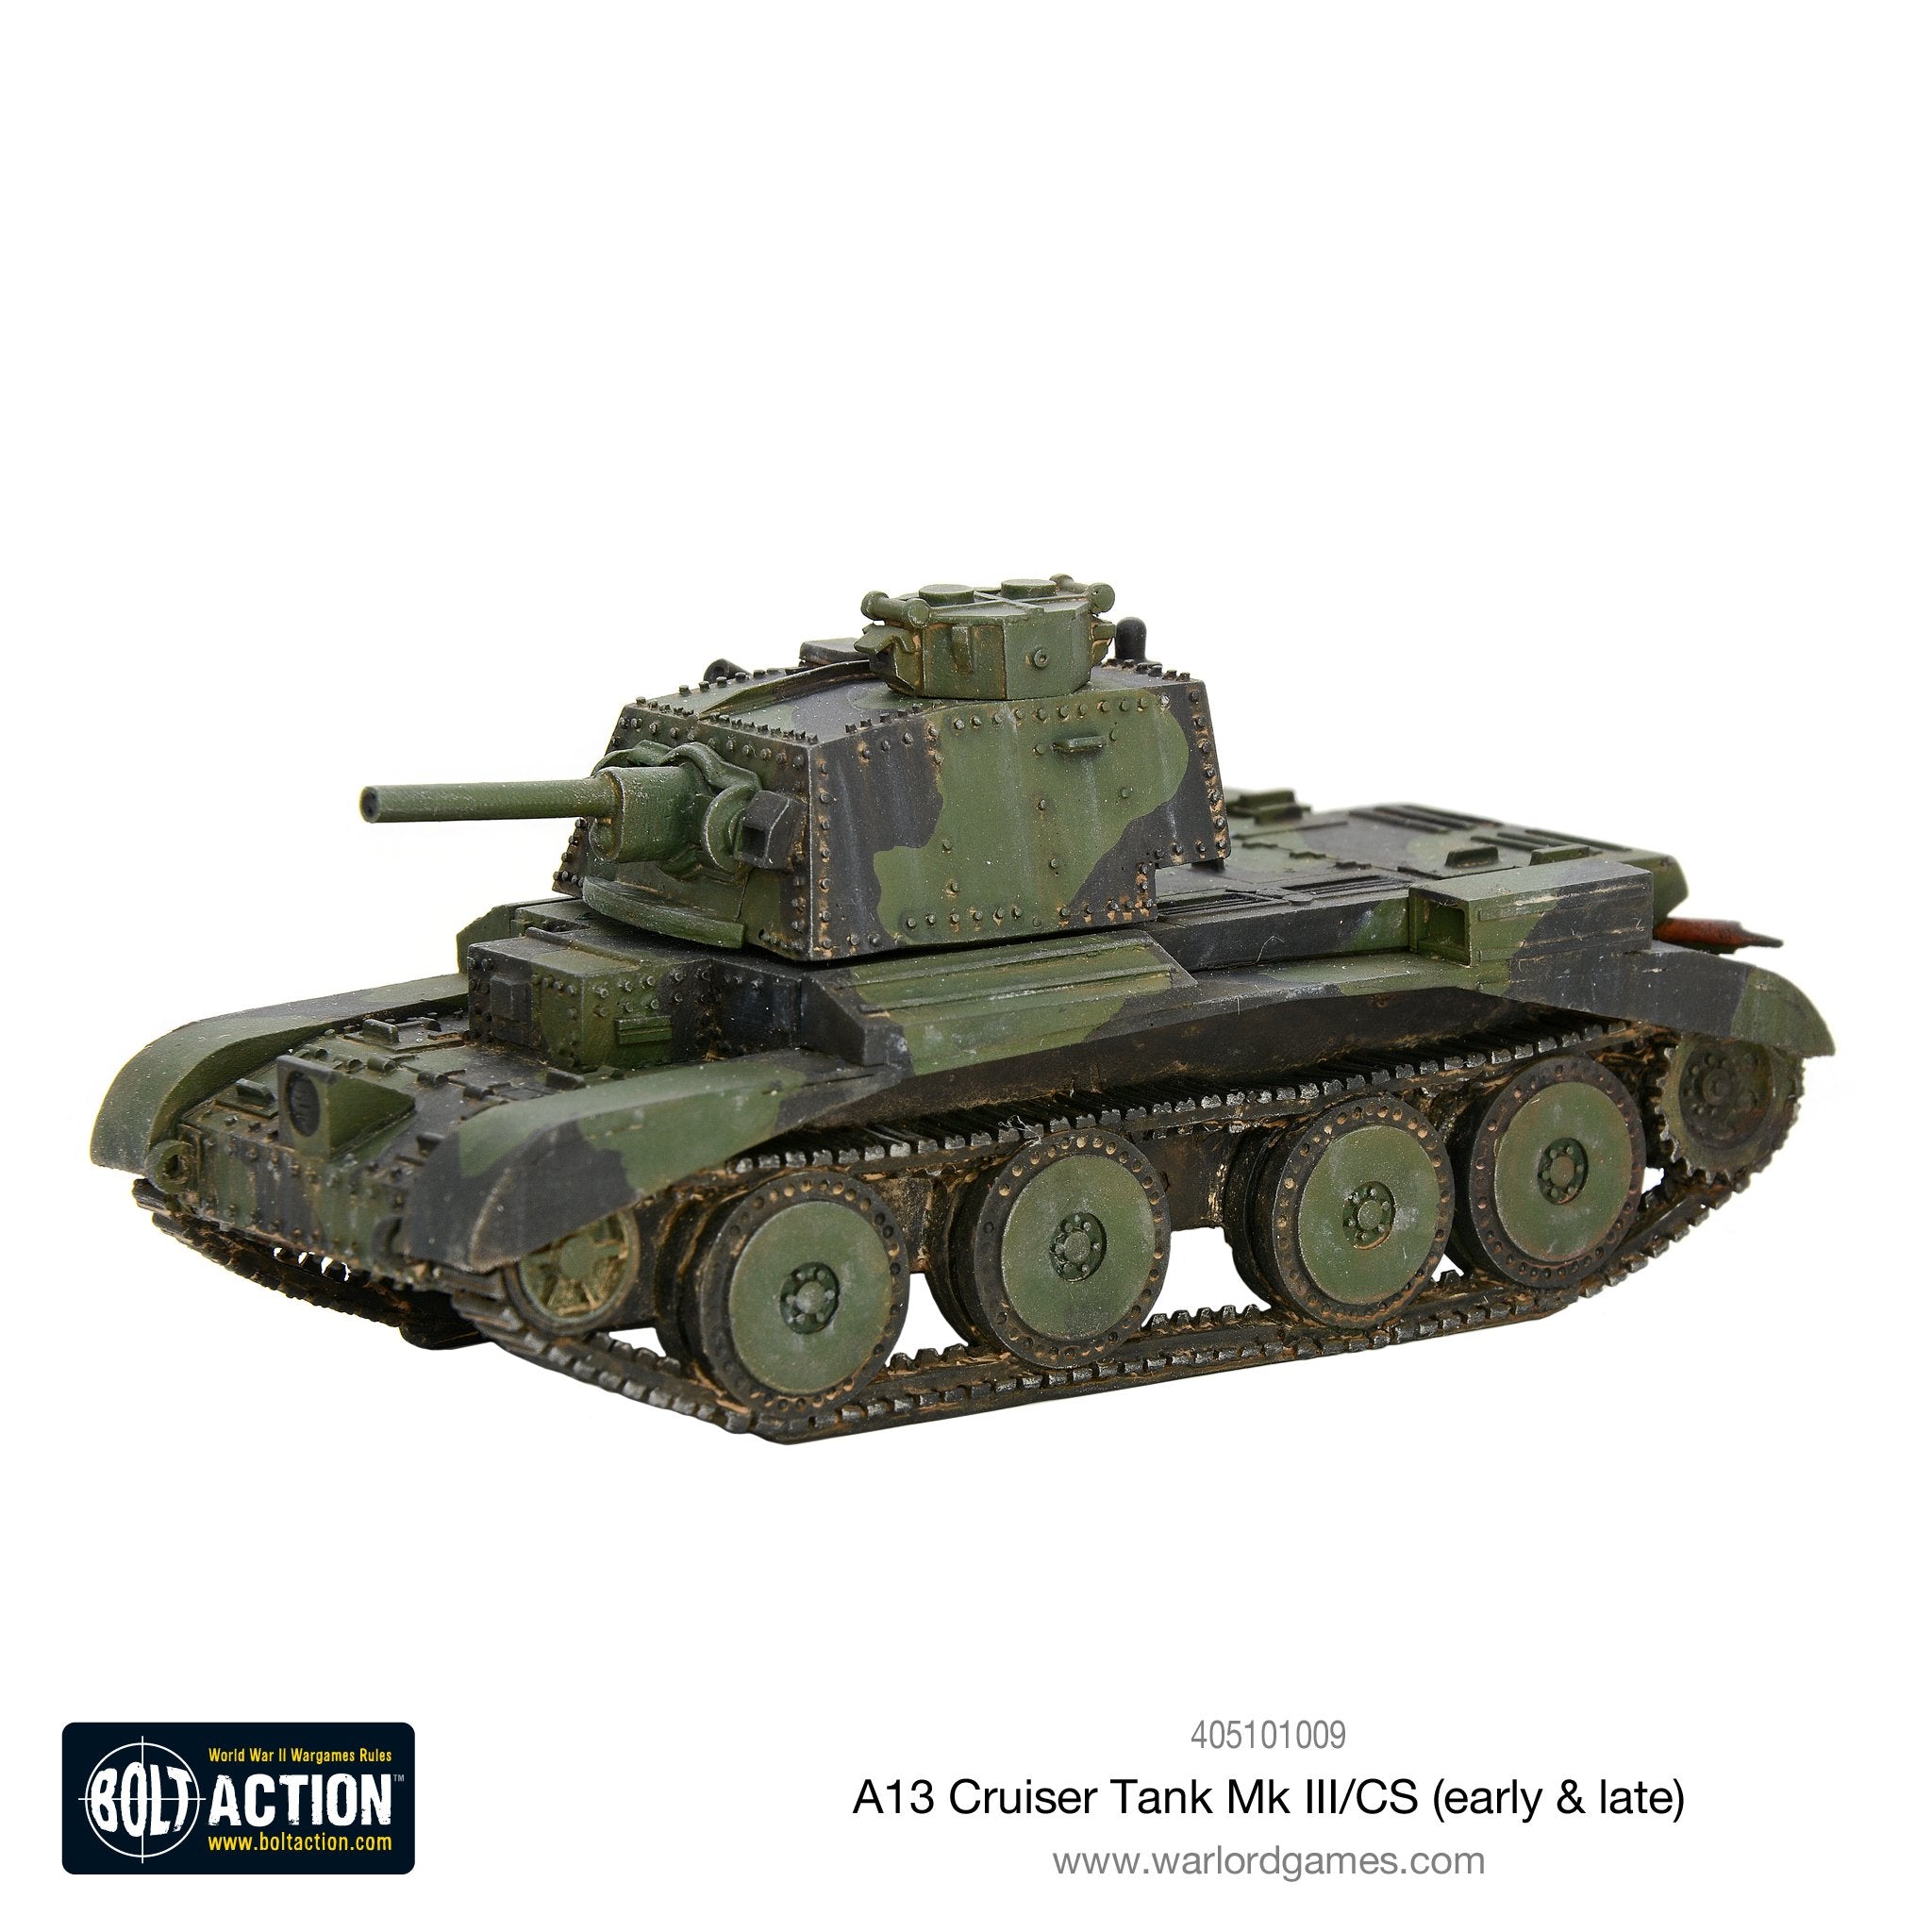 A13 cruiser tank Mk III/CS (early & late)